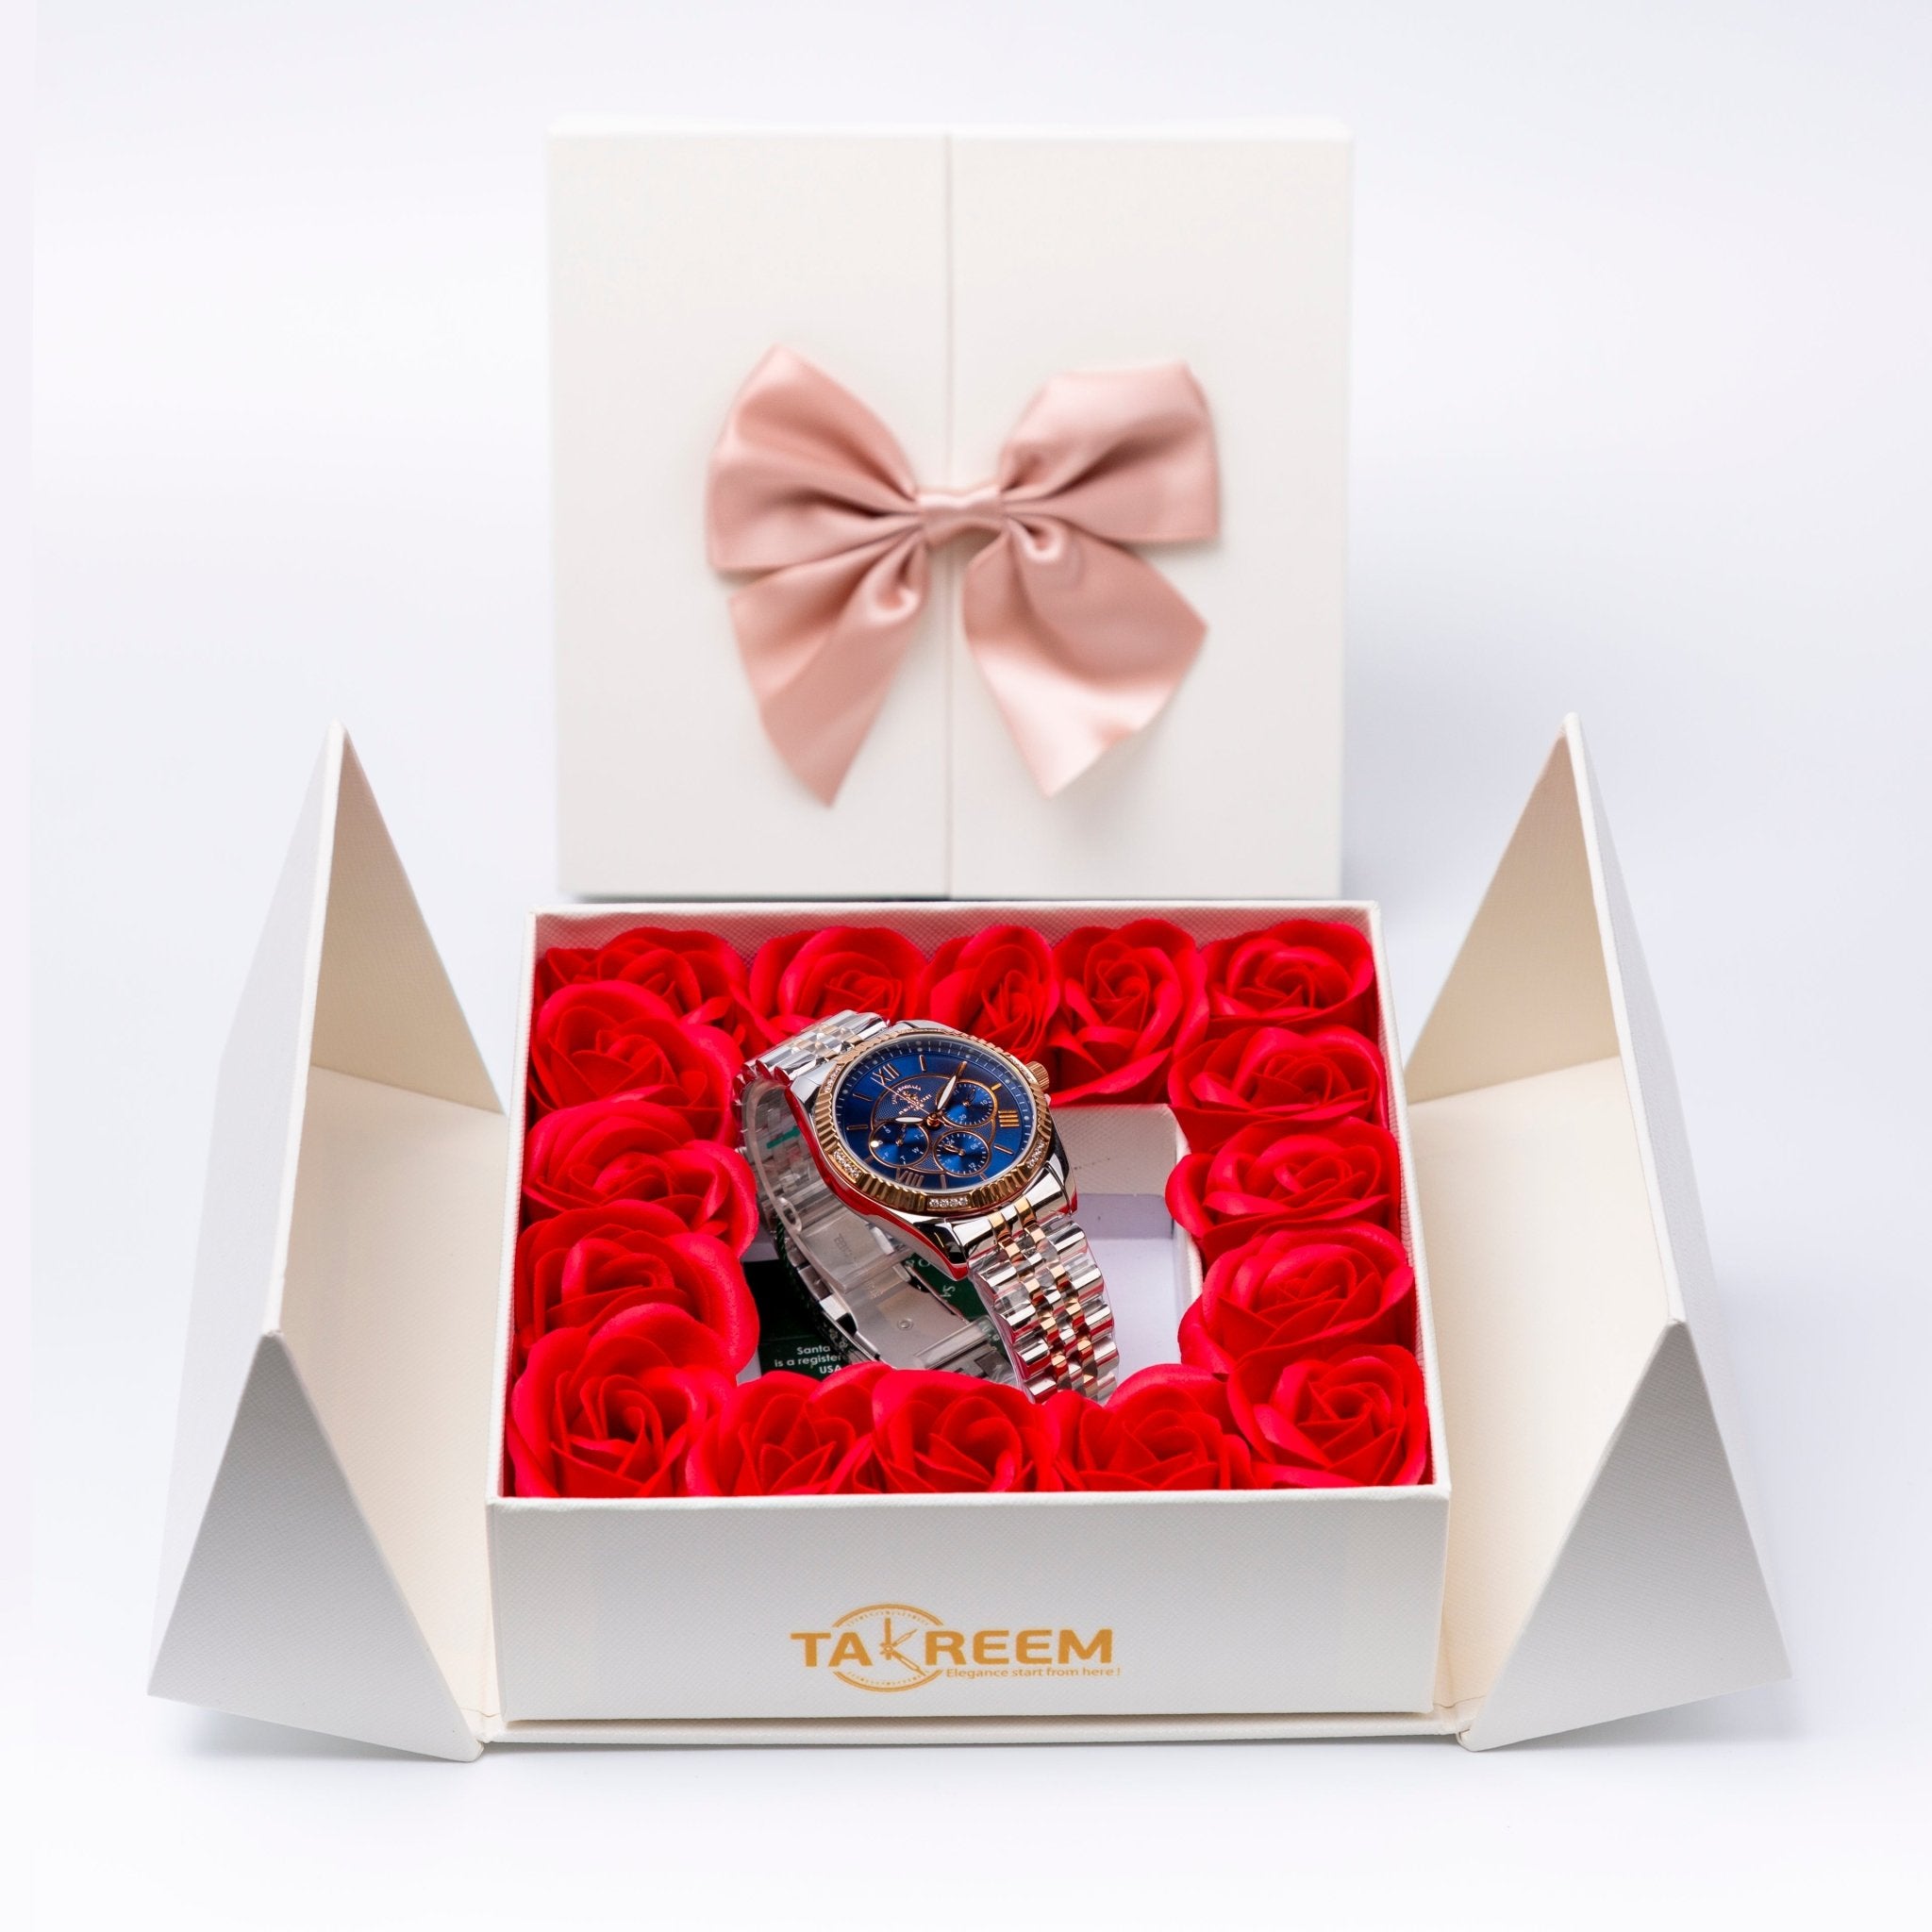 Flower Box - Gift For Women 22 - #shoFlower Box - Gift For Women 22p_name#Flower Box - Gift For Women 22Gift Boxes & TinsTakreemTakreem.joWomenWatchFlower Box - Gift For Women 22 - Takreem.jo